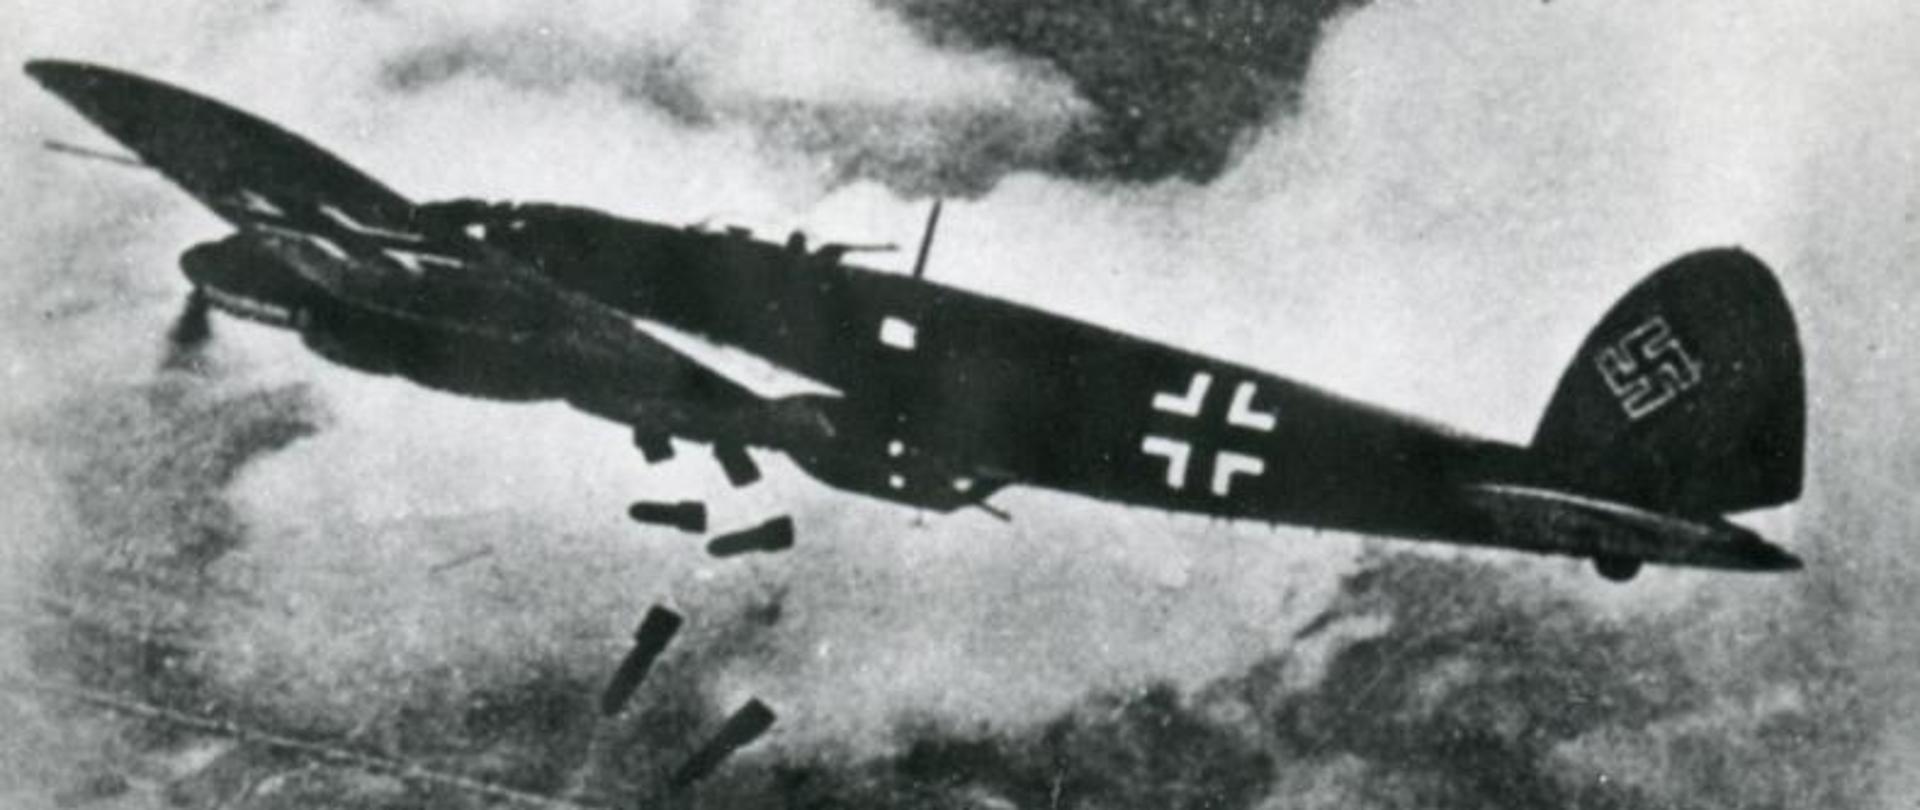 Samolot Heinkel He 111 zrzucający bomby na Warszawę.